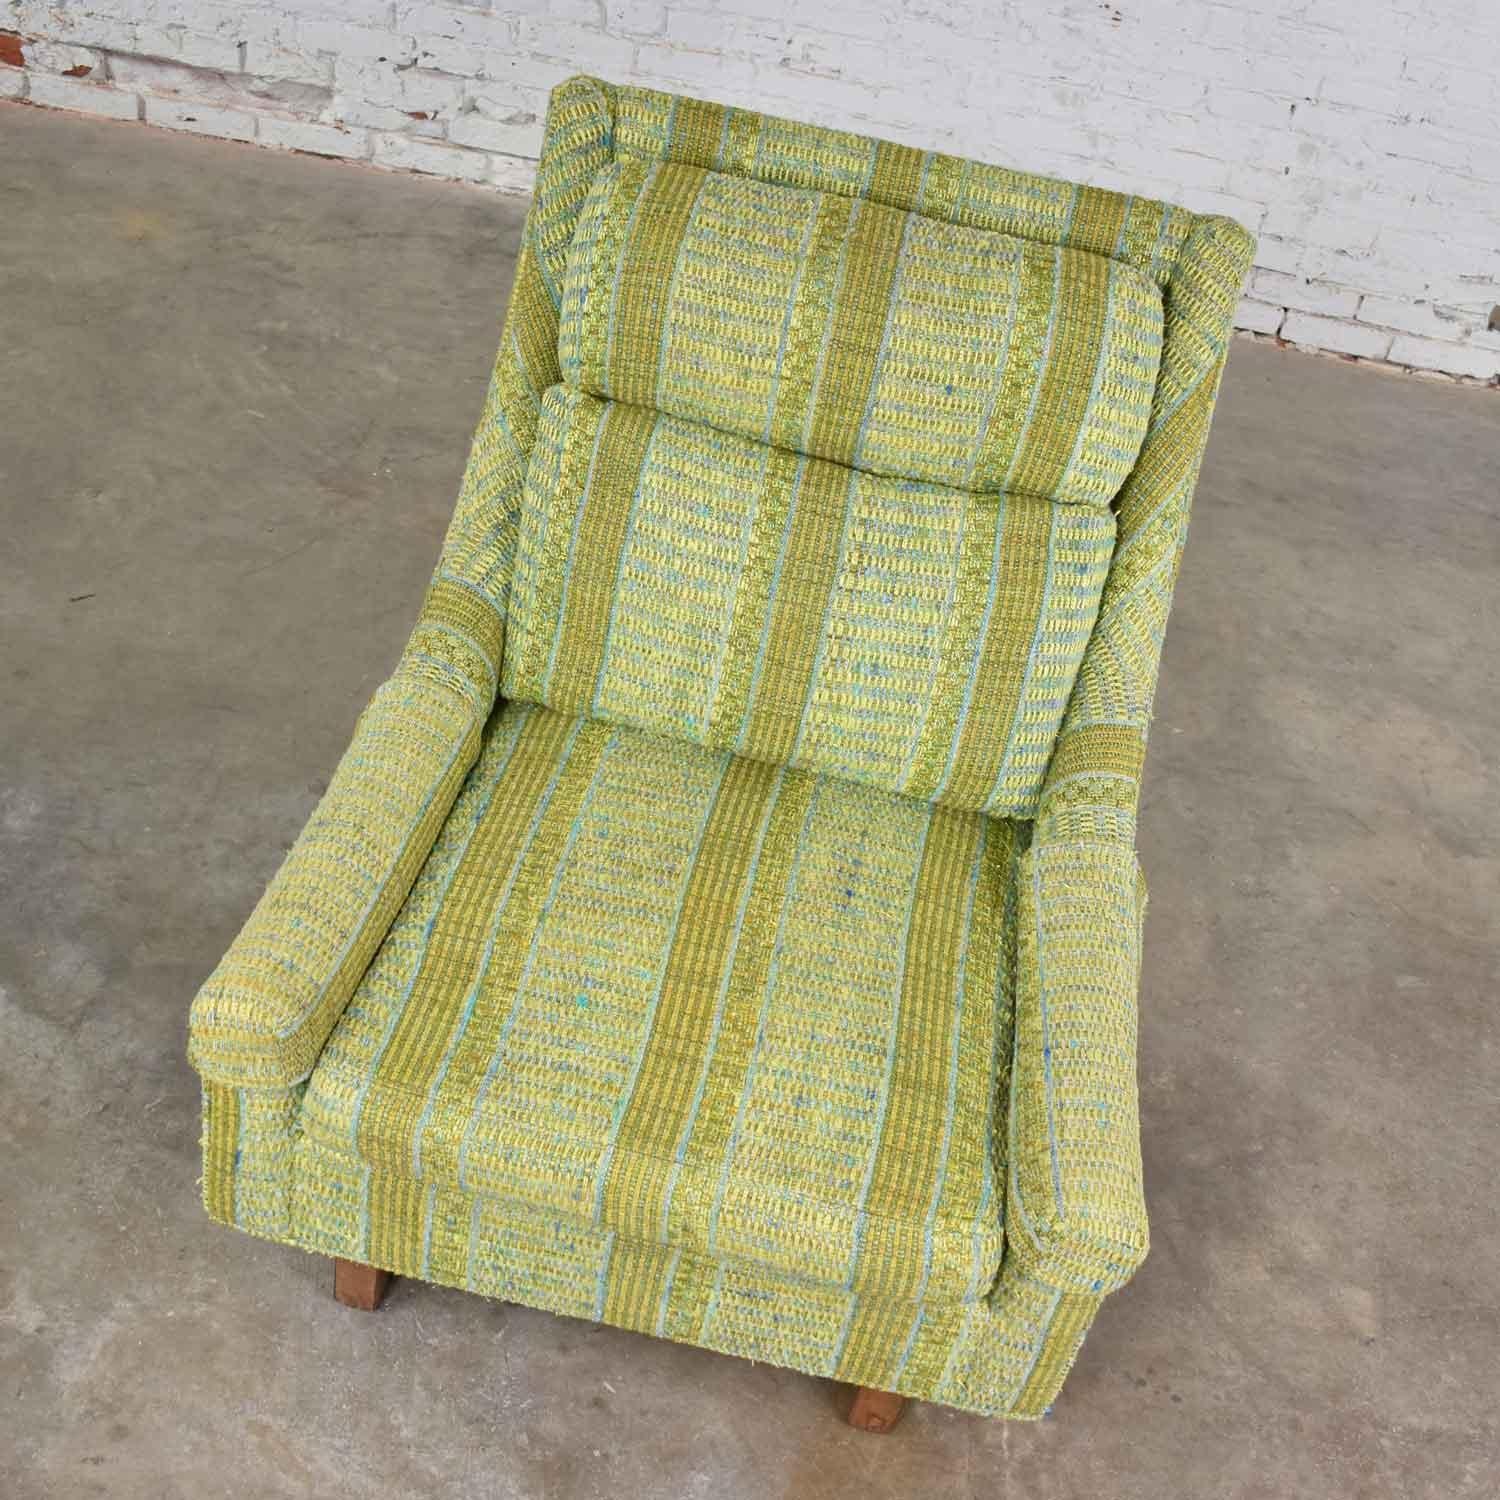 Vintage Mid-Century Modern High Back Lounge Chair von Flair Division of Bernhardt 1